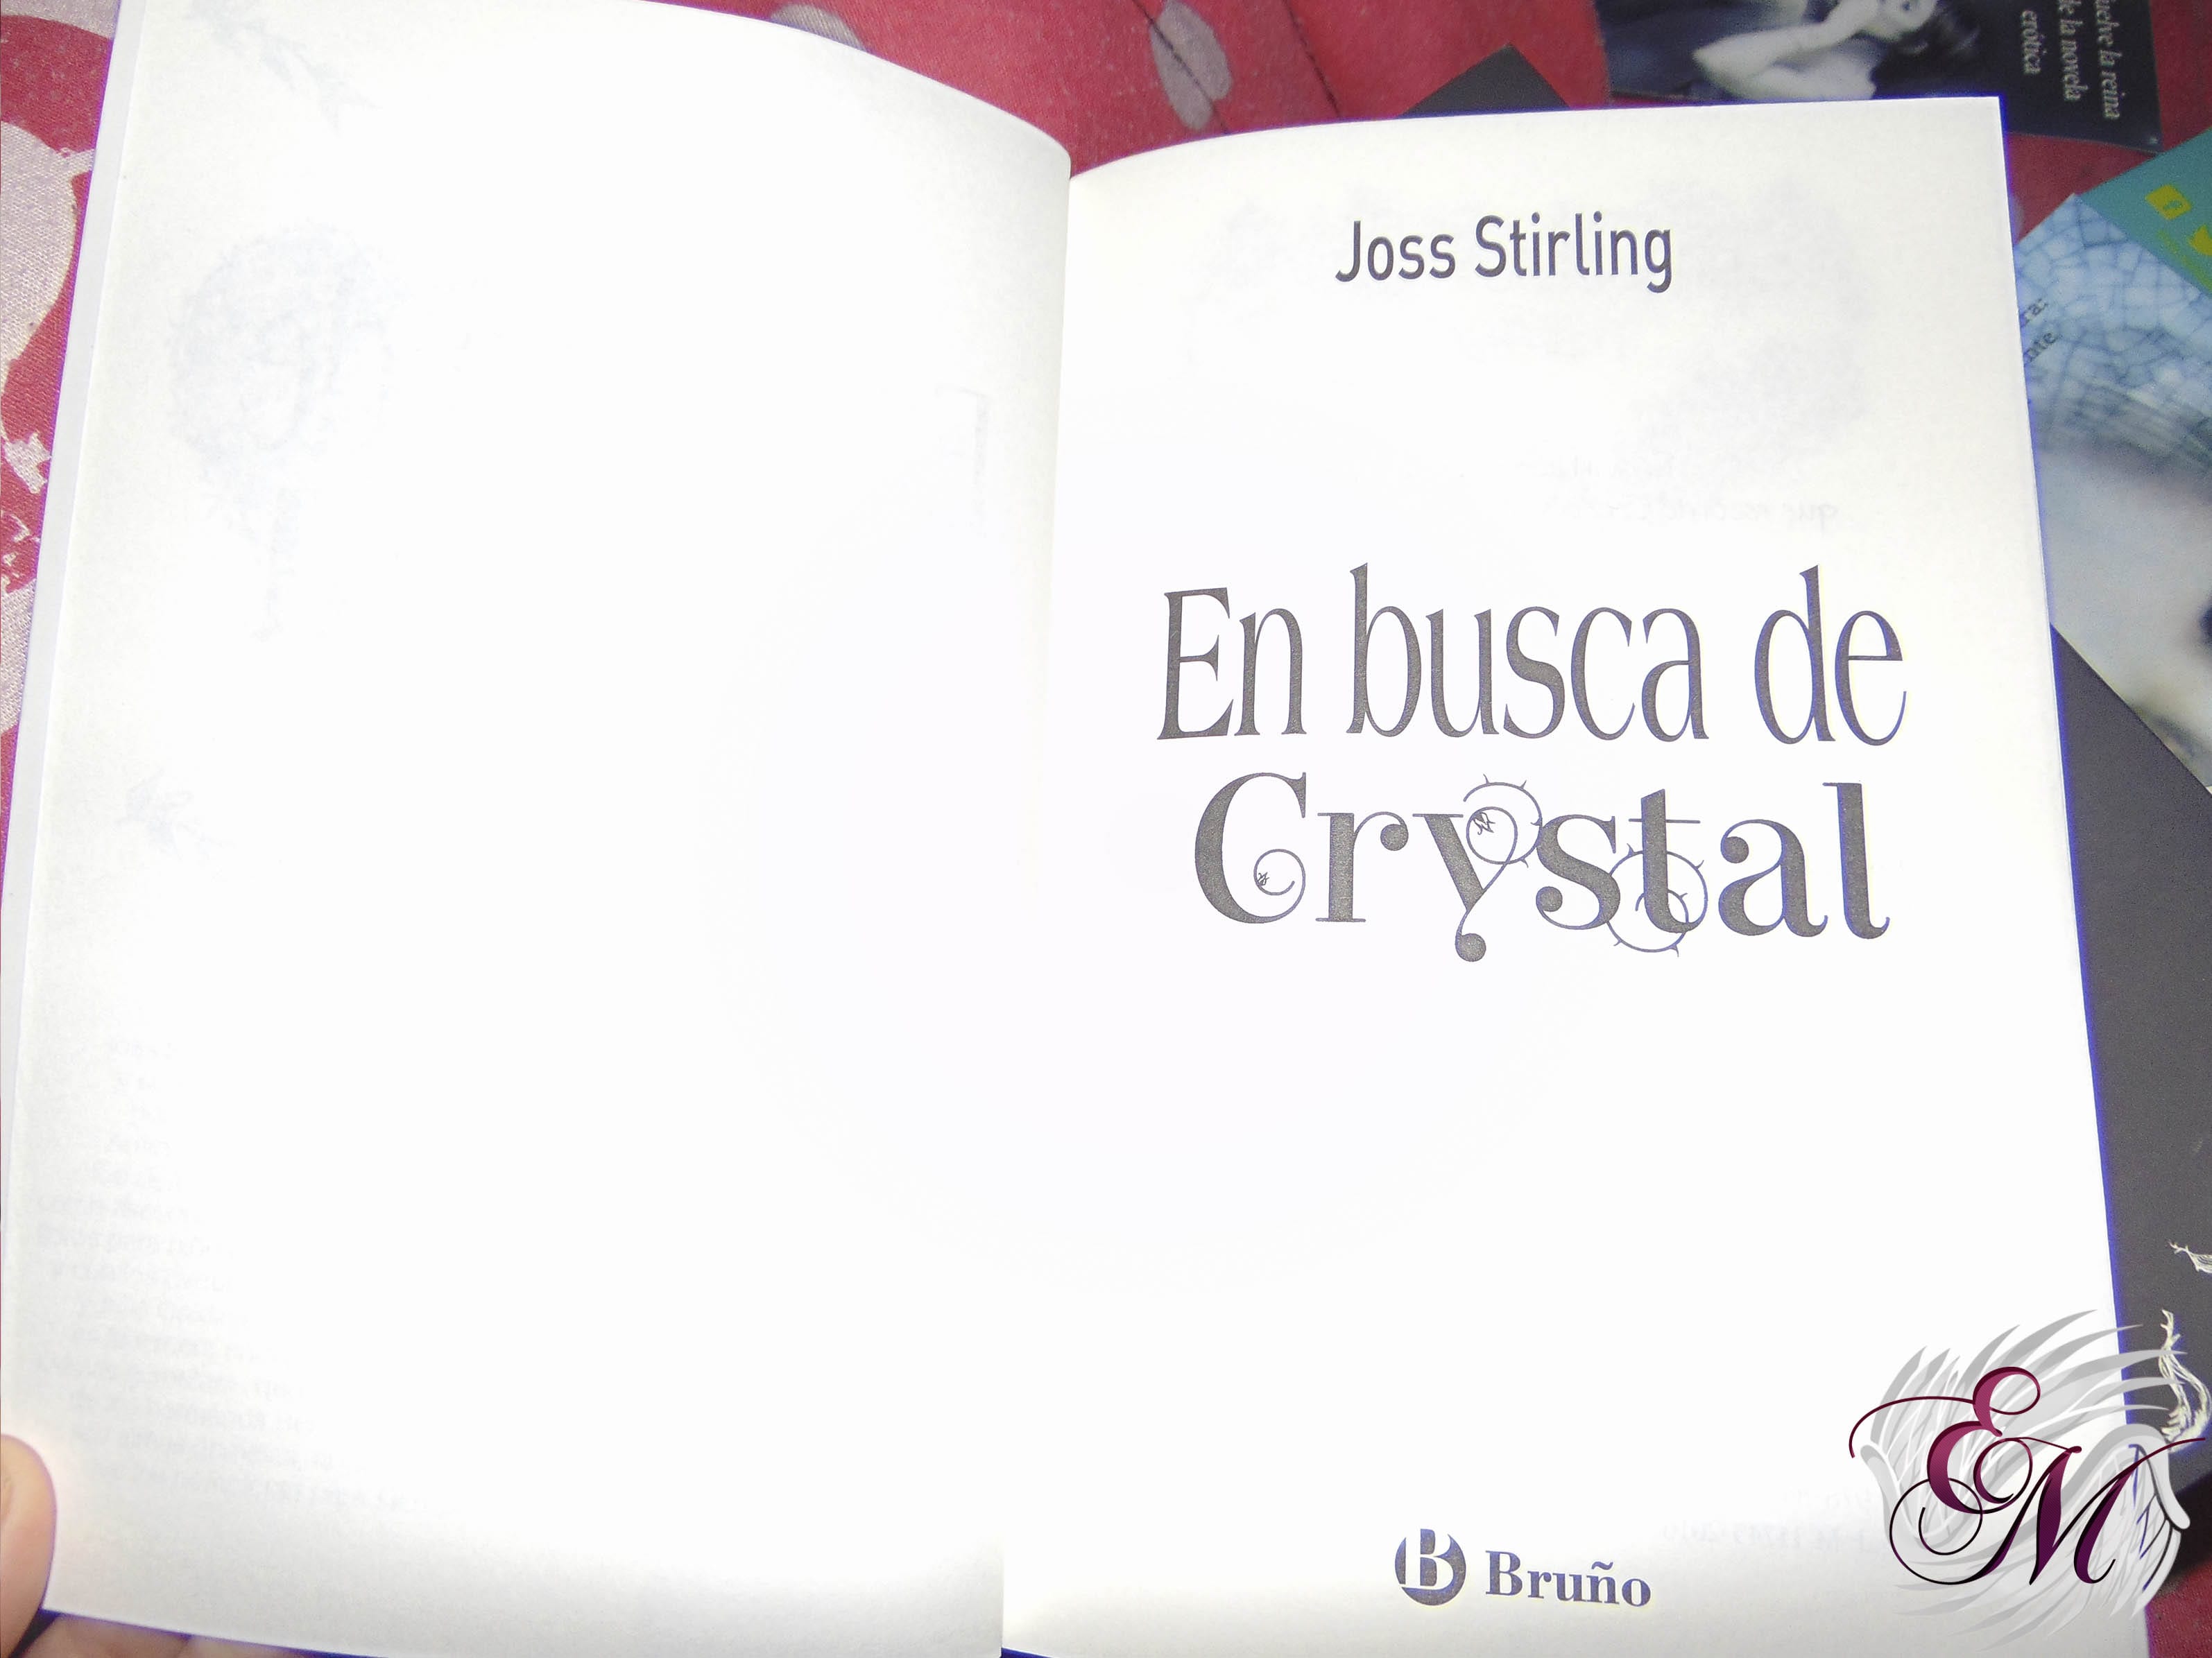 En busca de Crystal, de Joss Stirling - Reseaña